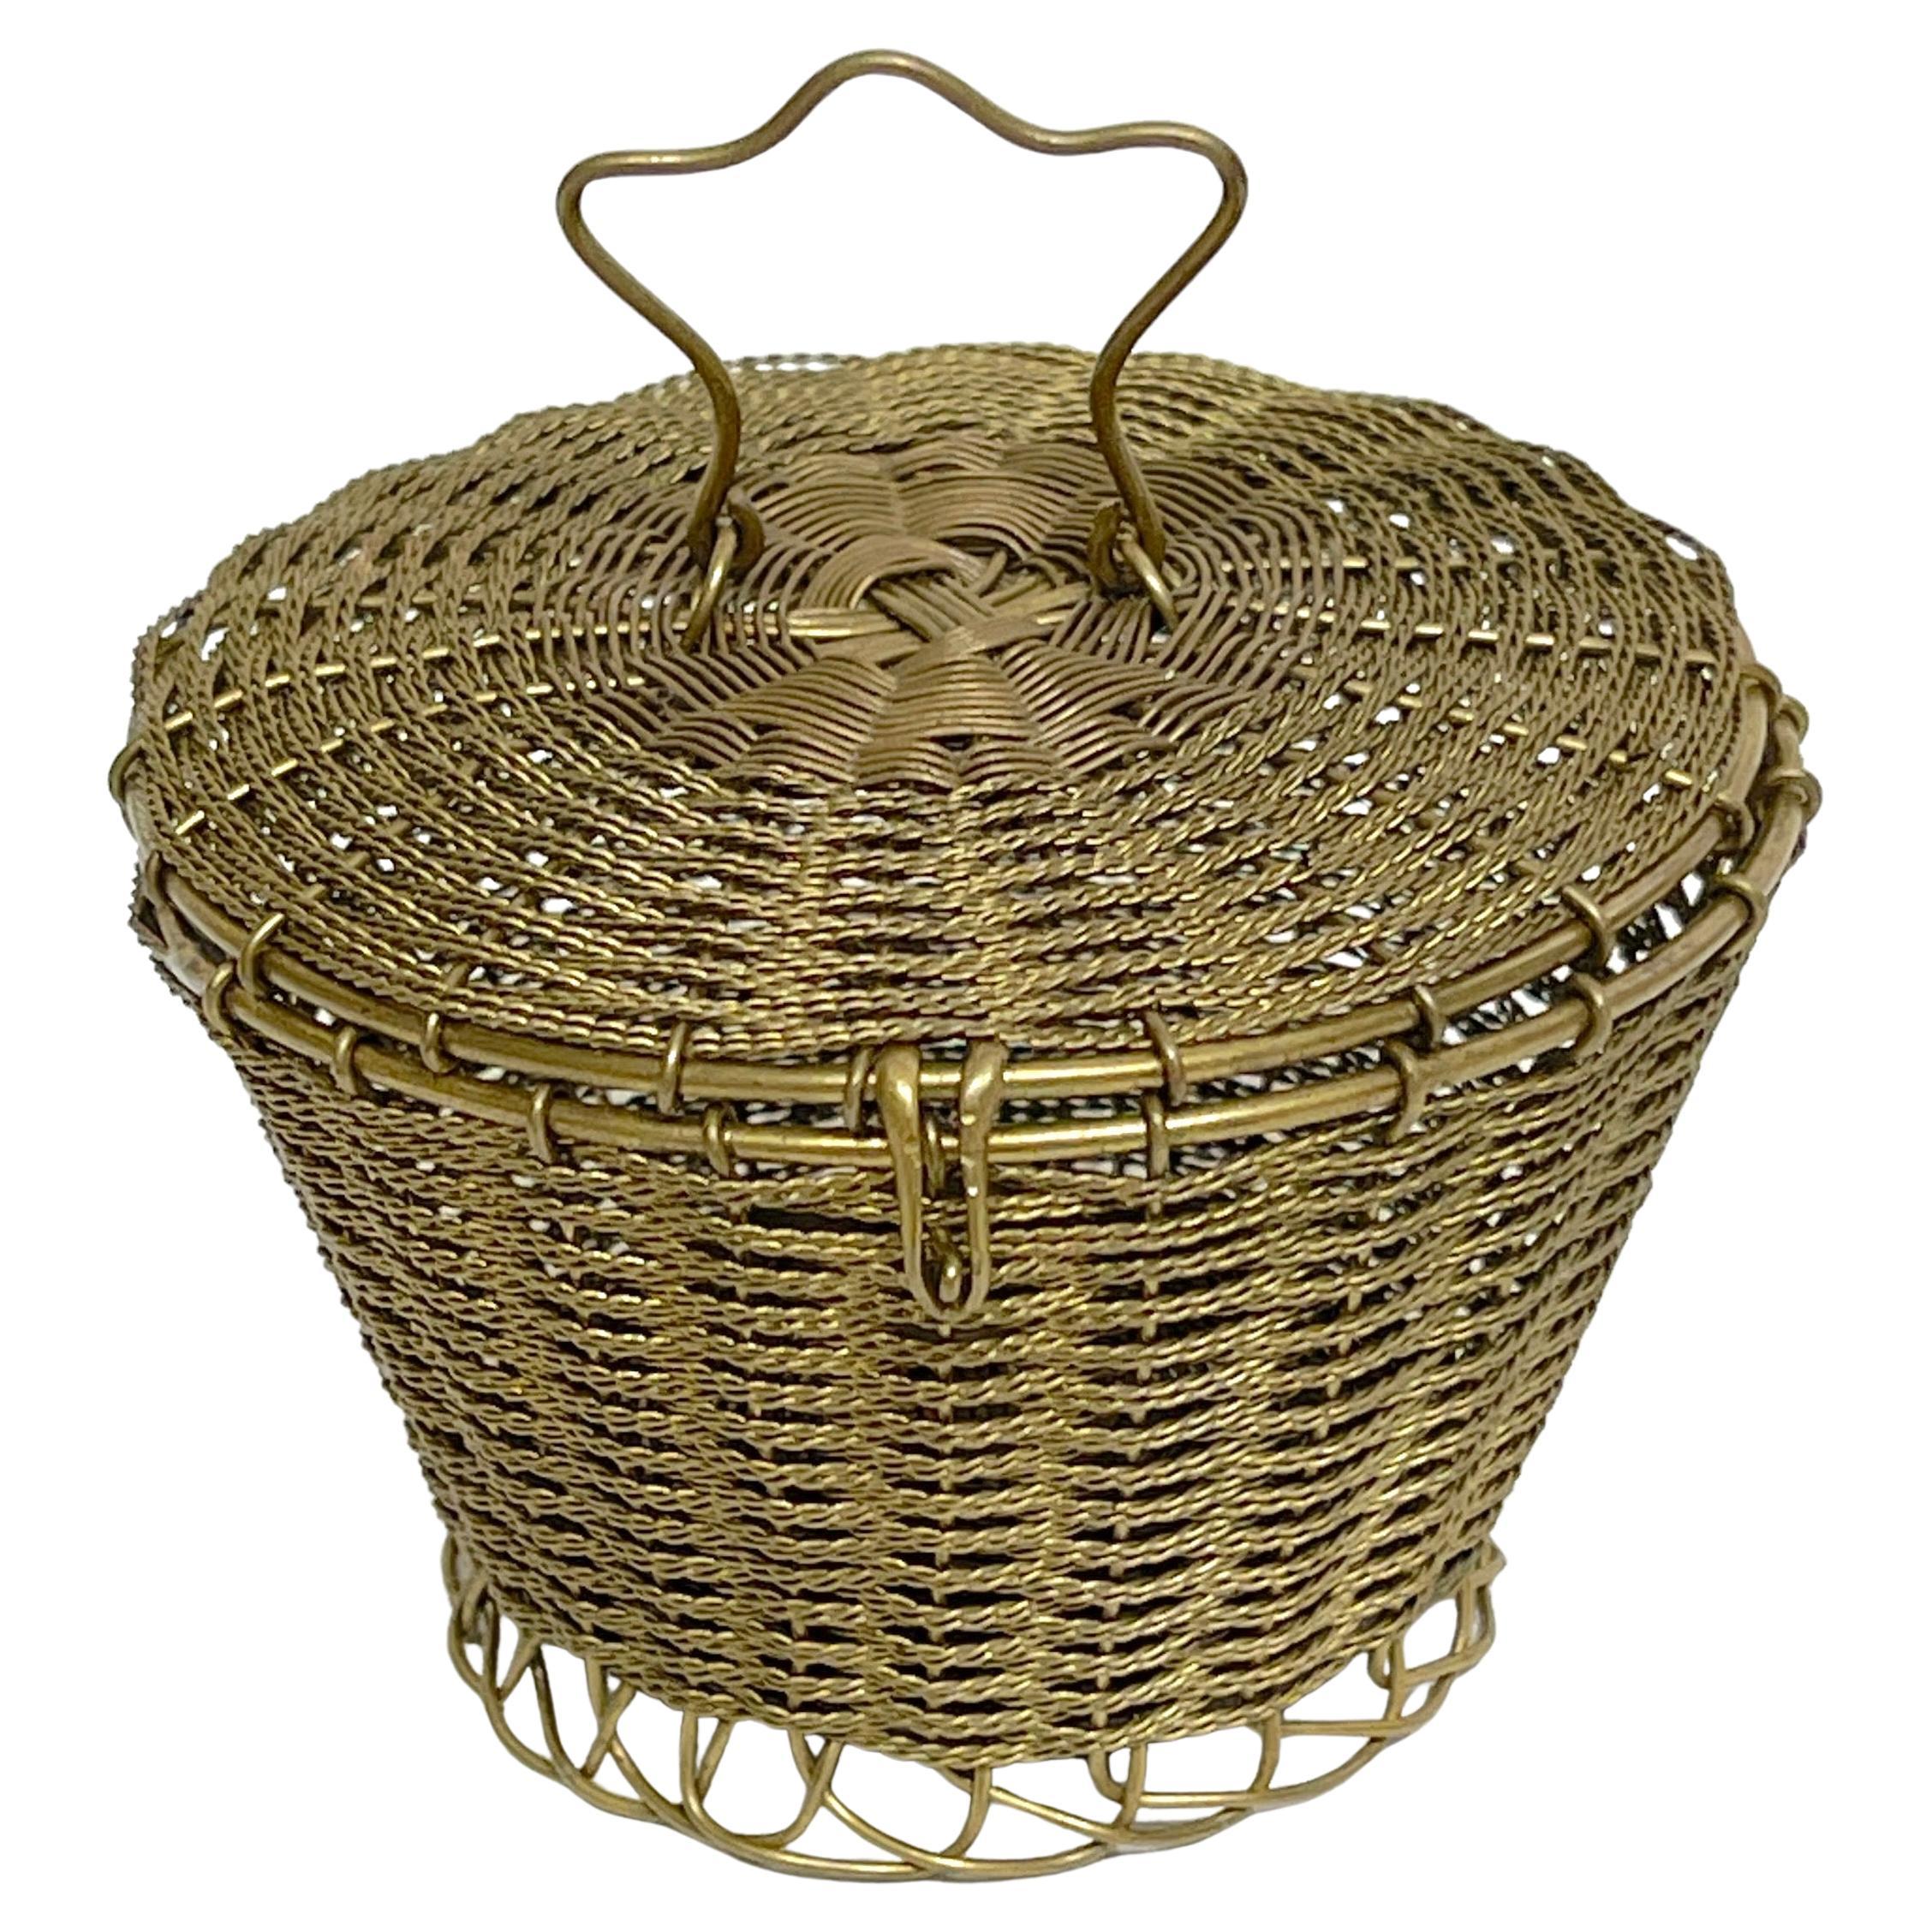 Napoleon III Woven Gilt Bronze Handled Basket, Weave Table Box